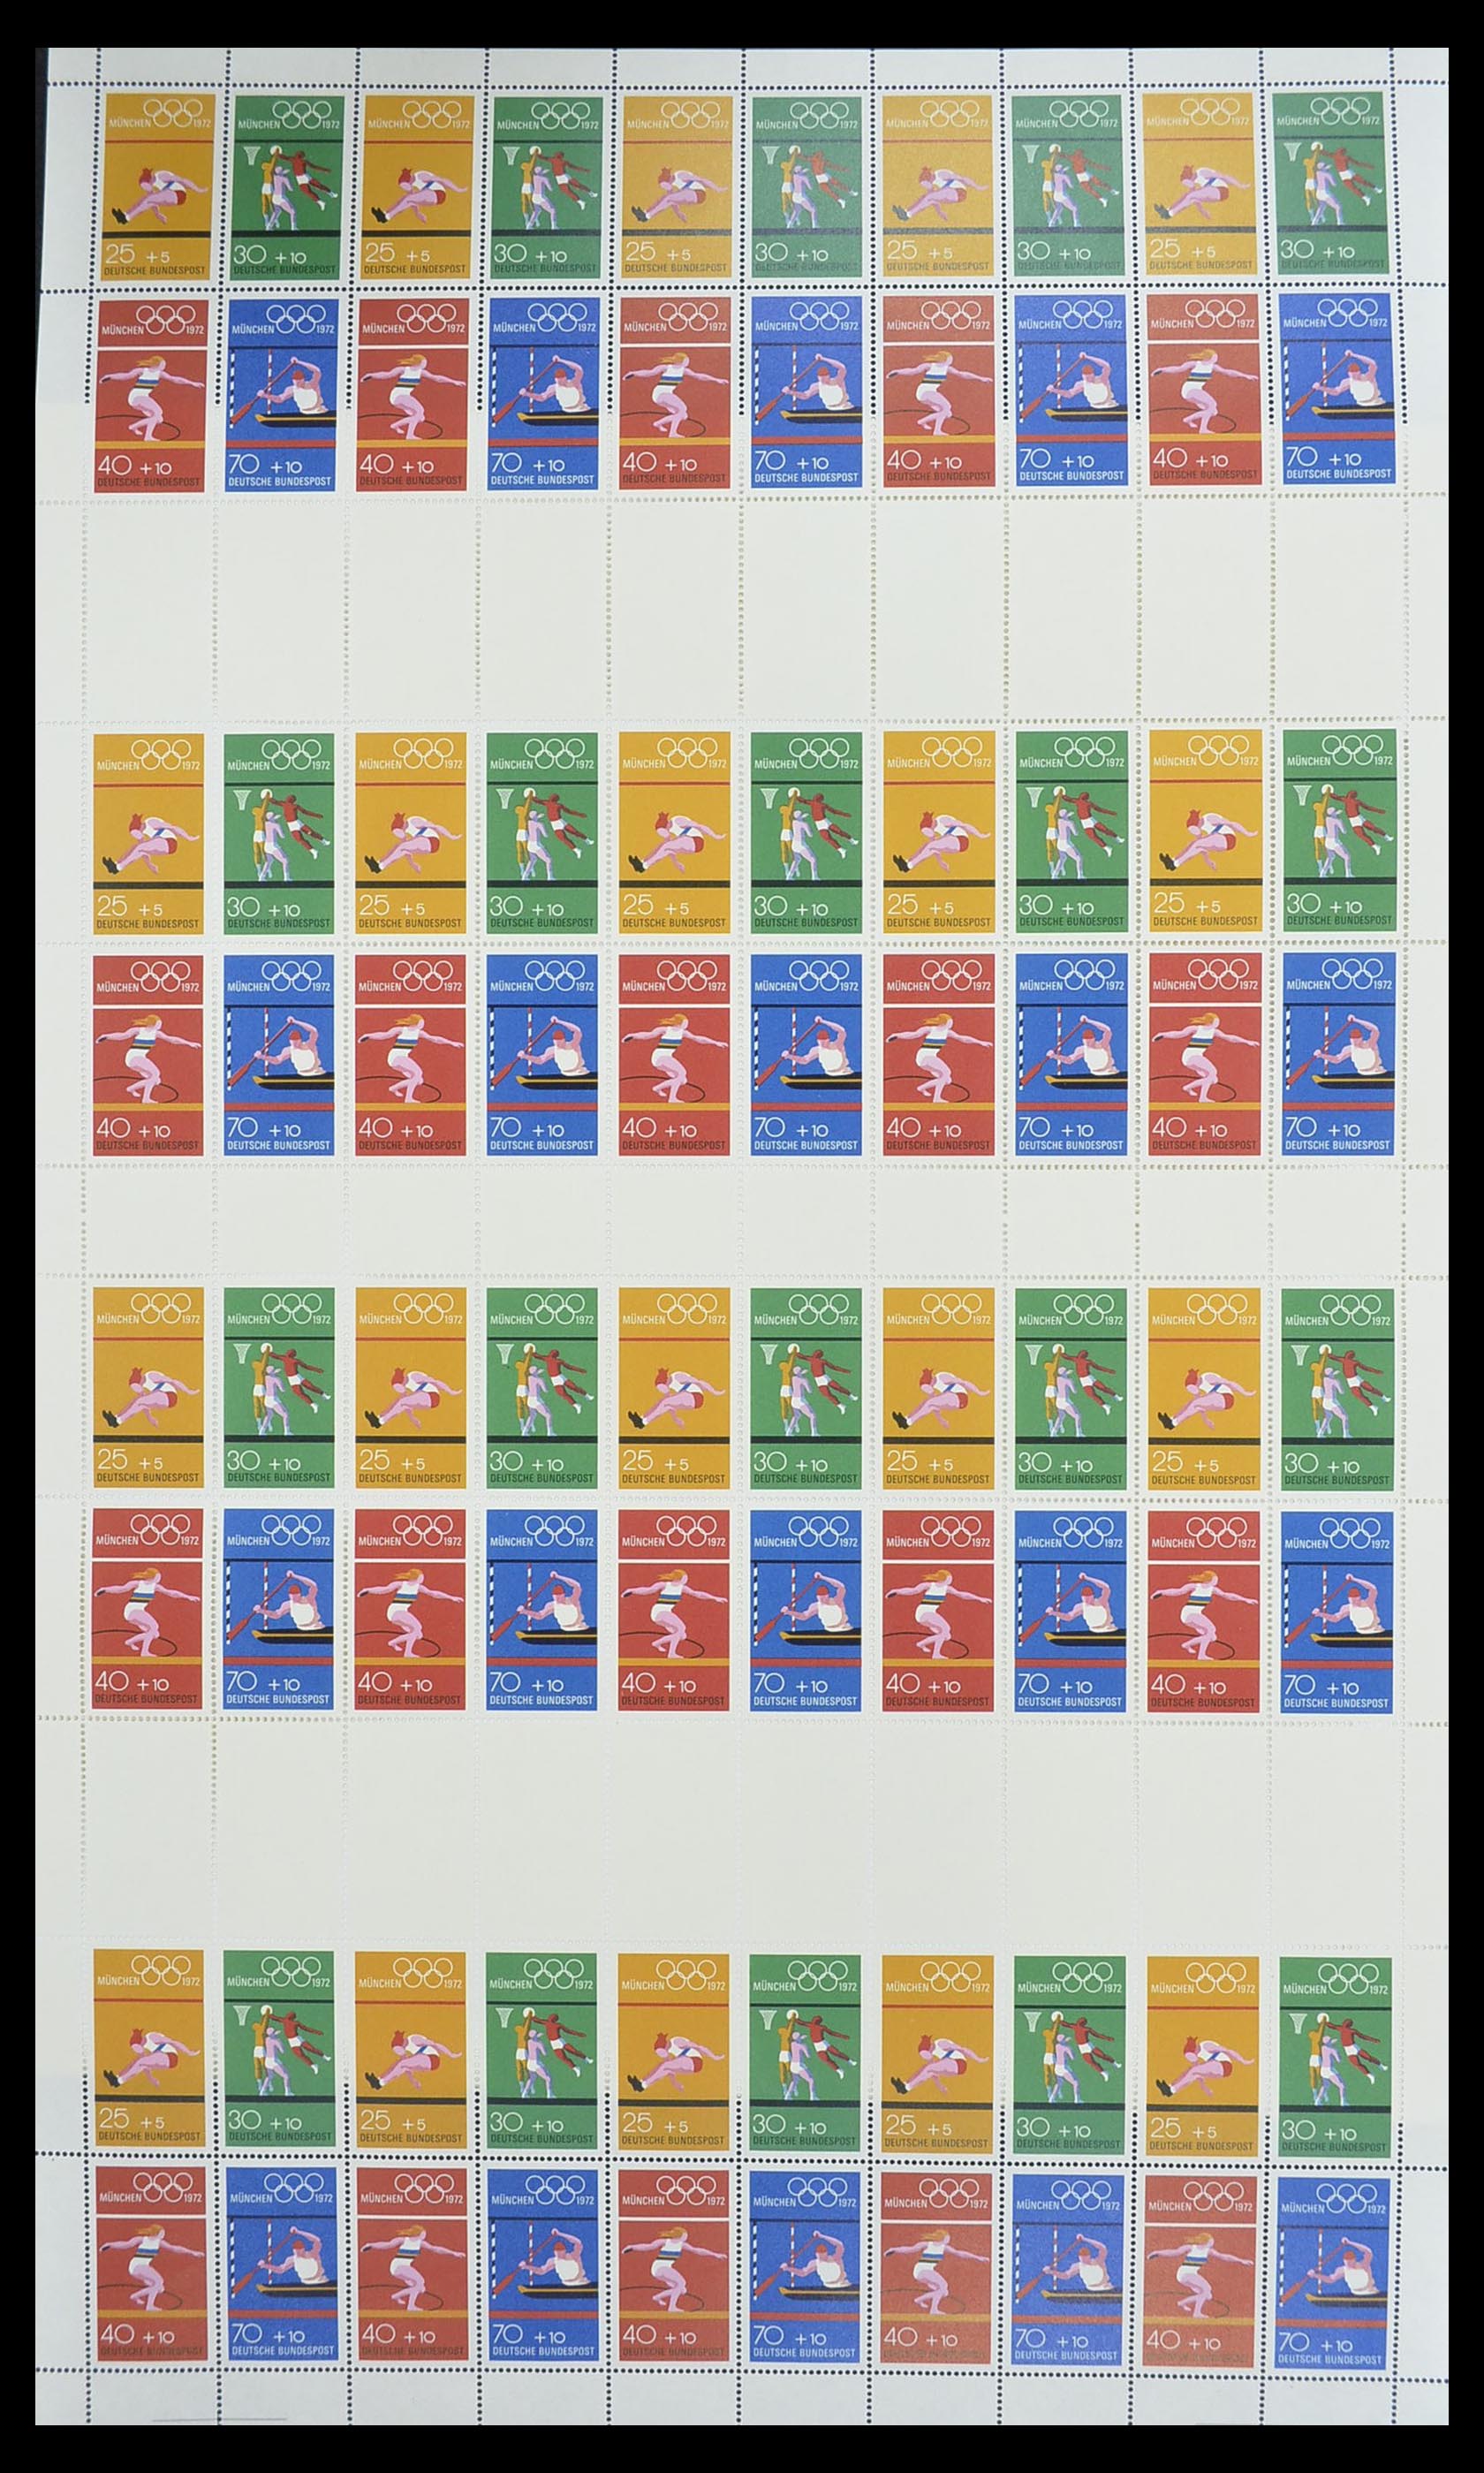 33753 003 - Postzegelverzameling 33753 Bund en Berlijn markenheftchenbogen 1966-1